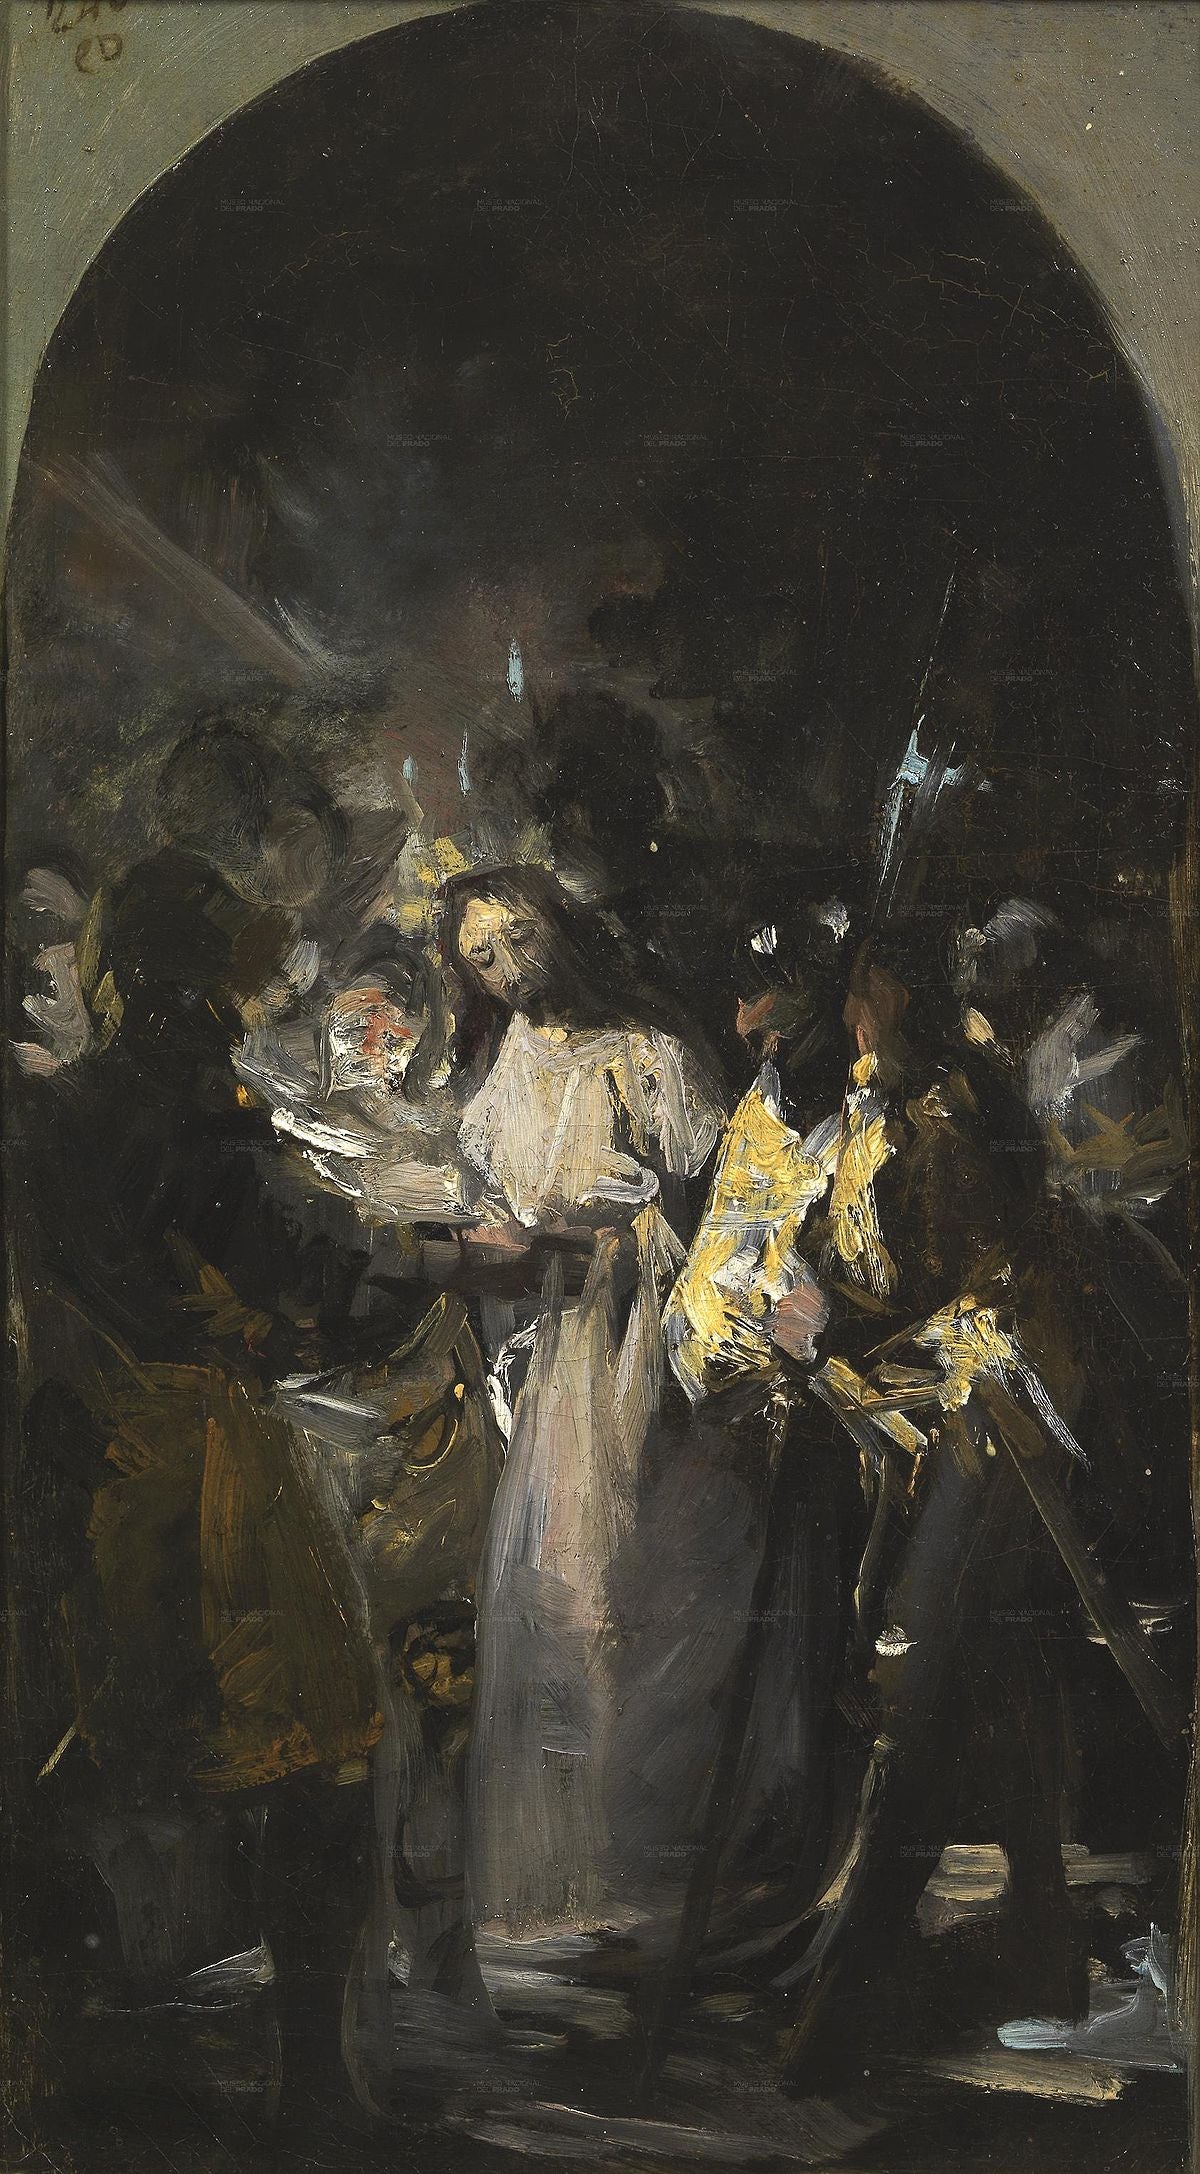 L'arrestation du Christ - Francisco de Goya